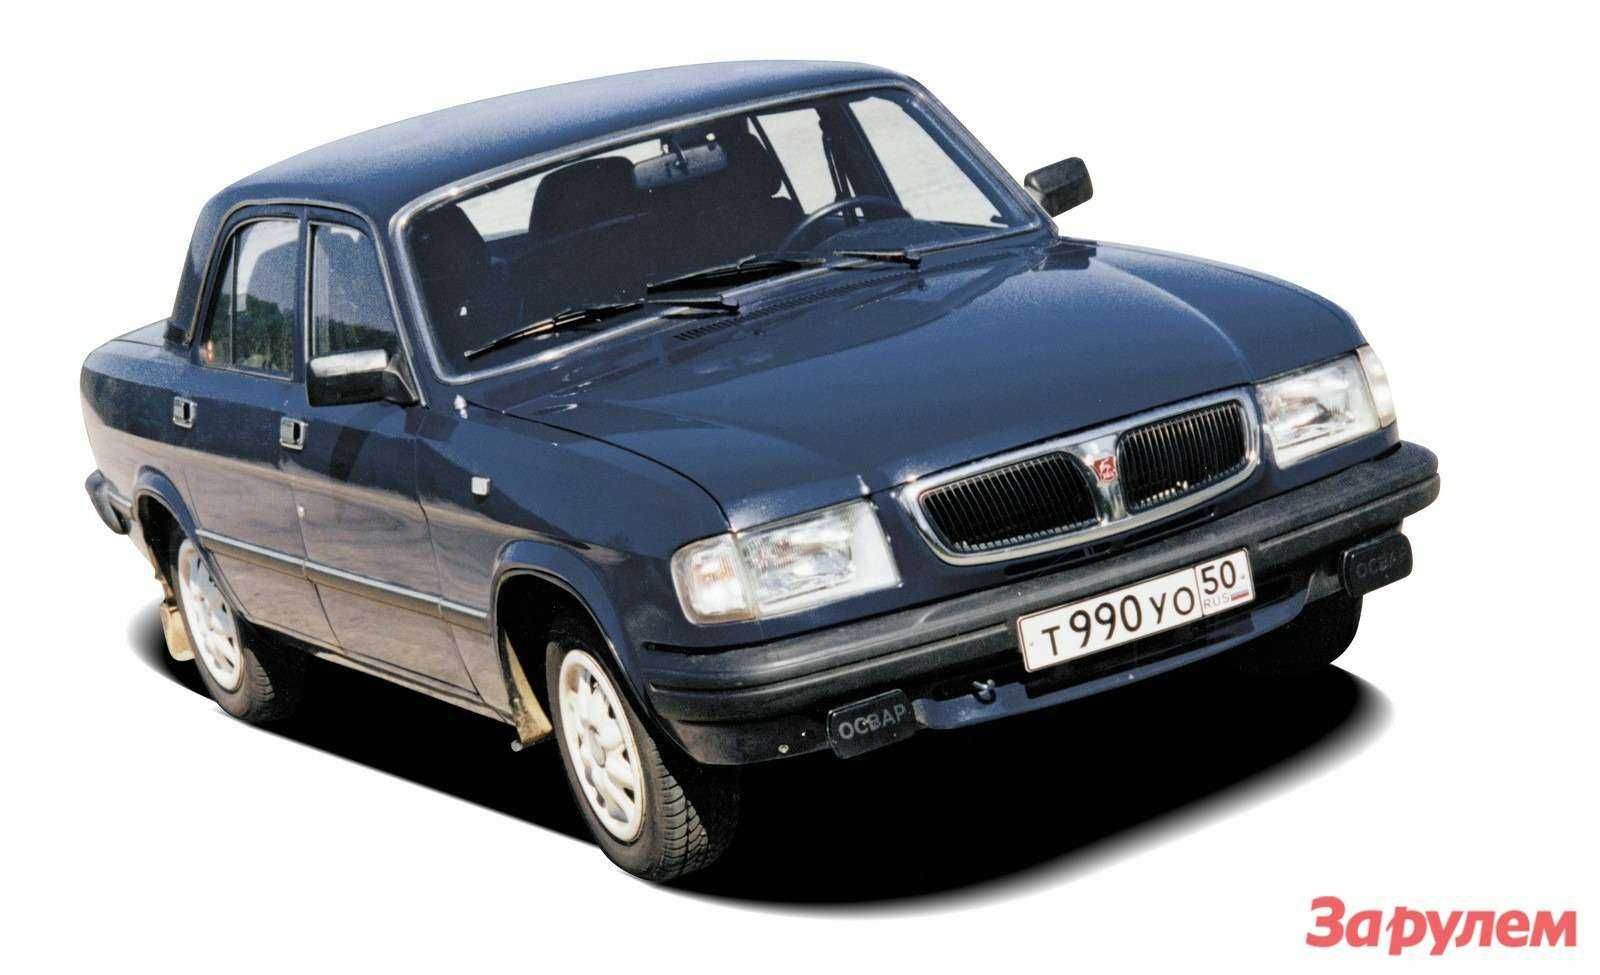 Вес газ 3110. Волга ГАЗ 3110. ГАЗ 3110 Волга 2003. ГАЗ- Волга автомобиль ГАЗ 3110. ГАЗ 3110 Волга 1999.